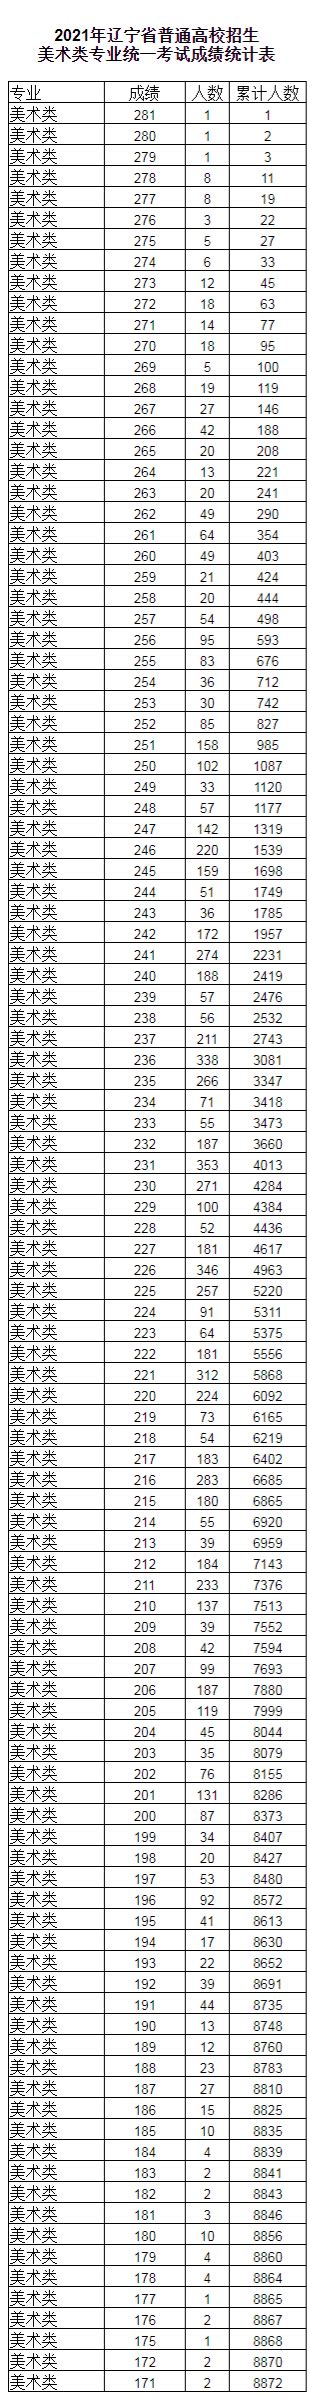 2019辽宁高考一分一段表成绩排名统计表(文理科)_2021高考网手机版